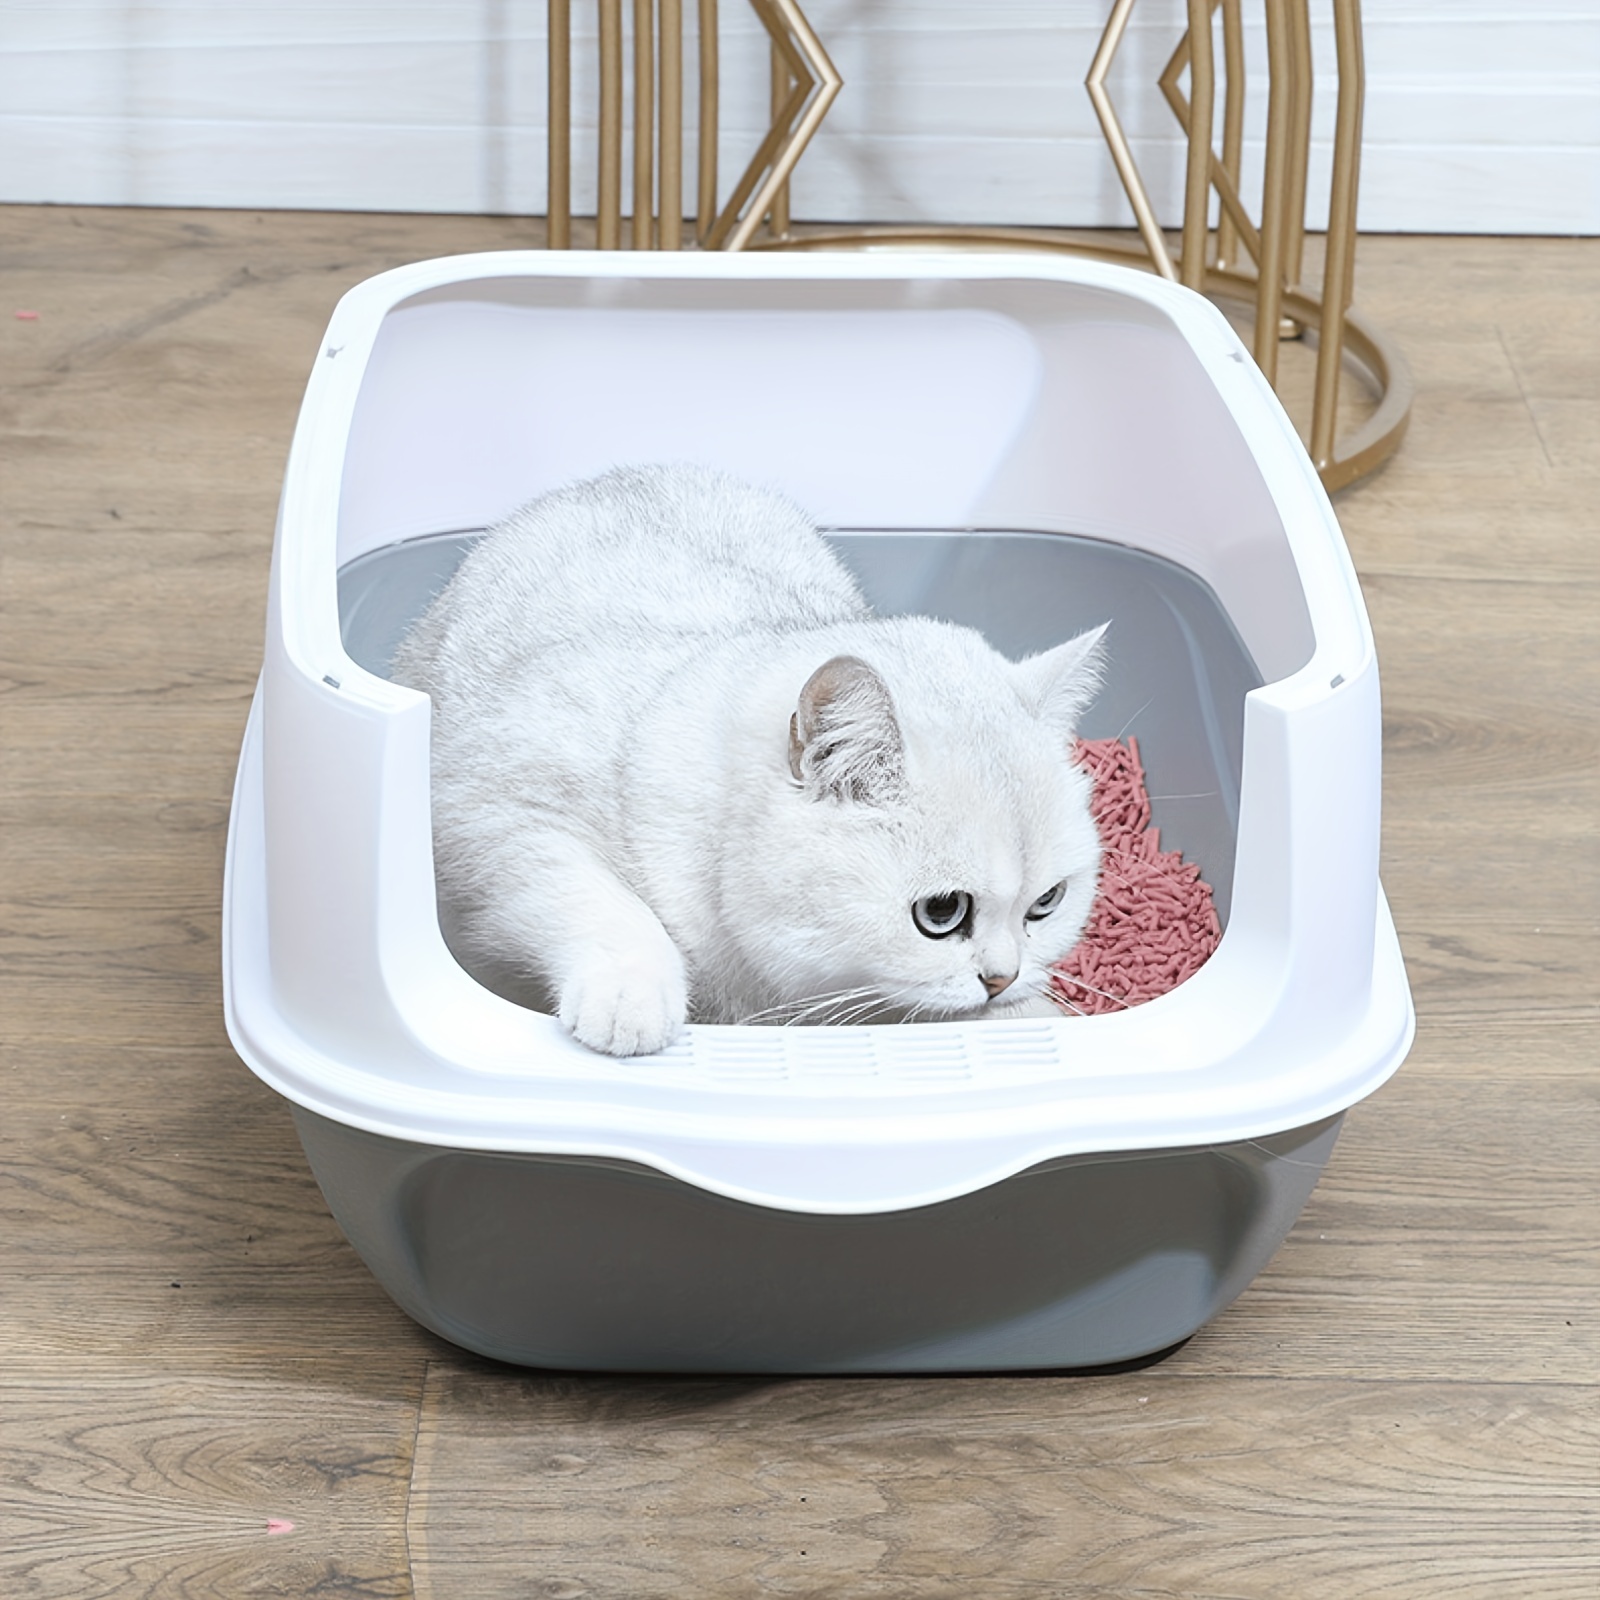 קופסת חול לחתולים עם מכסה, אספקת מקלחת קלה ומניעת זרימה, מתאים לחתולים קטנים ובינוניים